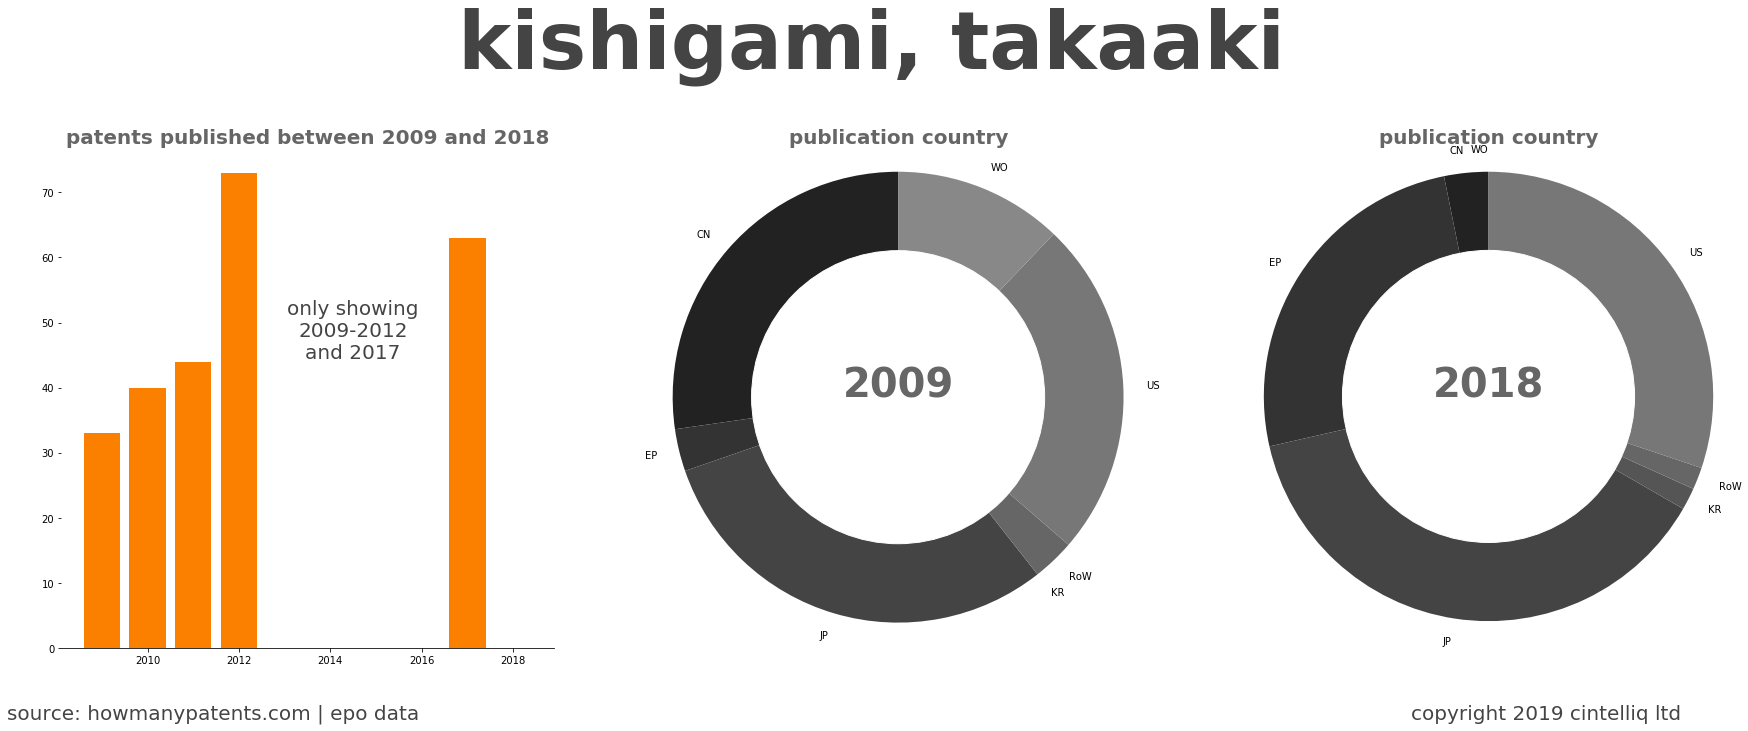 summary of patents for Kishigami, Takaaki